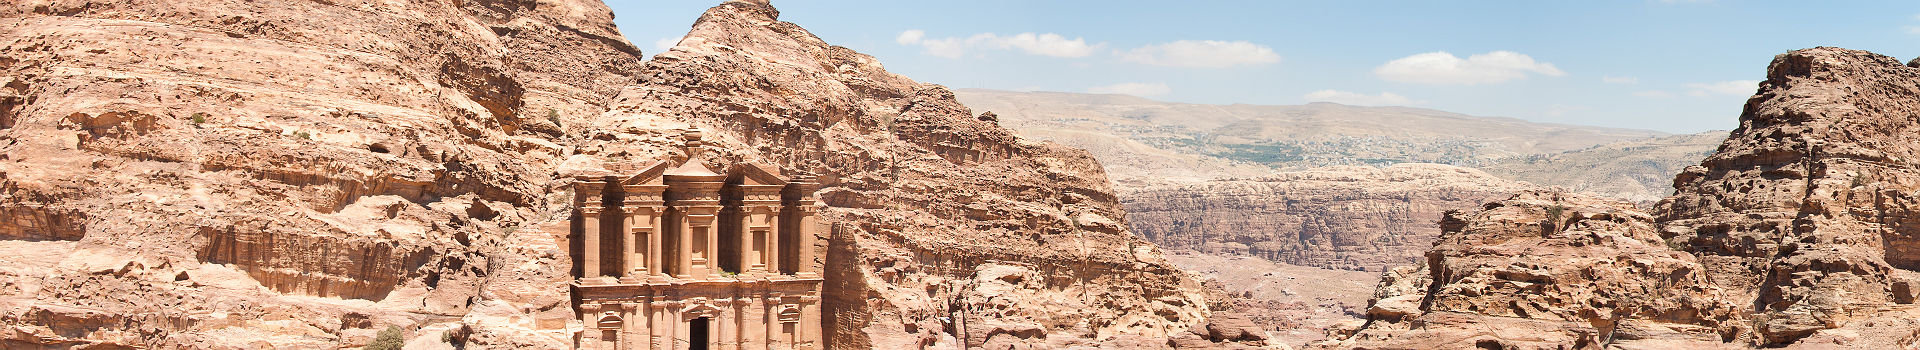 Asie Centrale - Jordanie - Vue panoramique sur le monument de Pétra